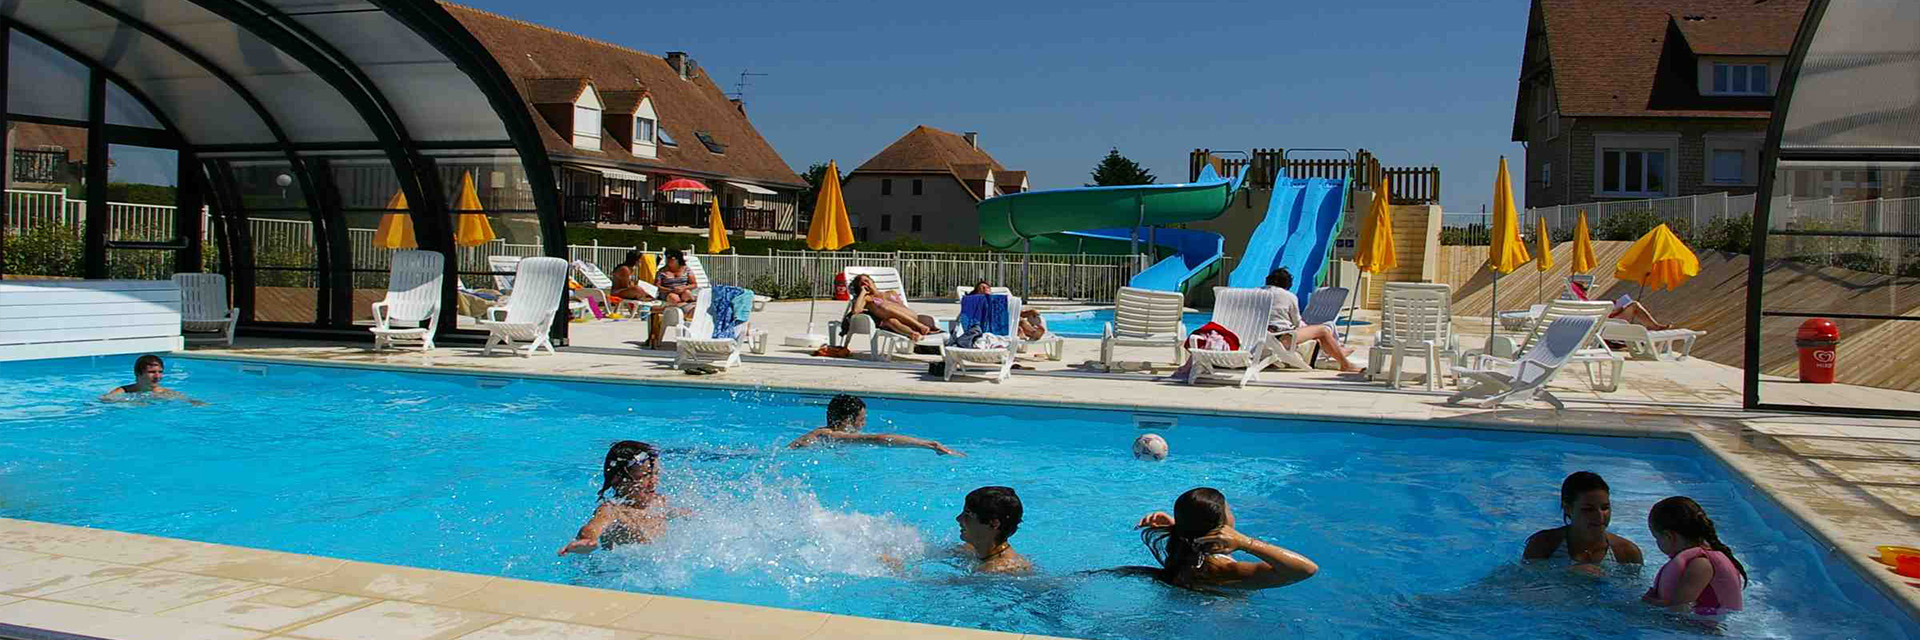 Hôtel Club de la Plage - Village Vacances Cap France